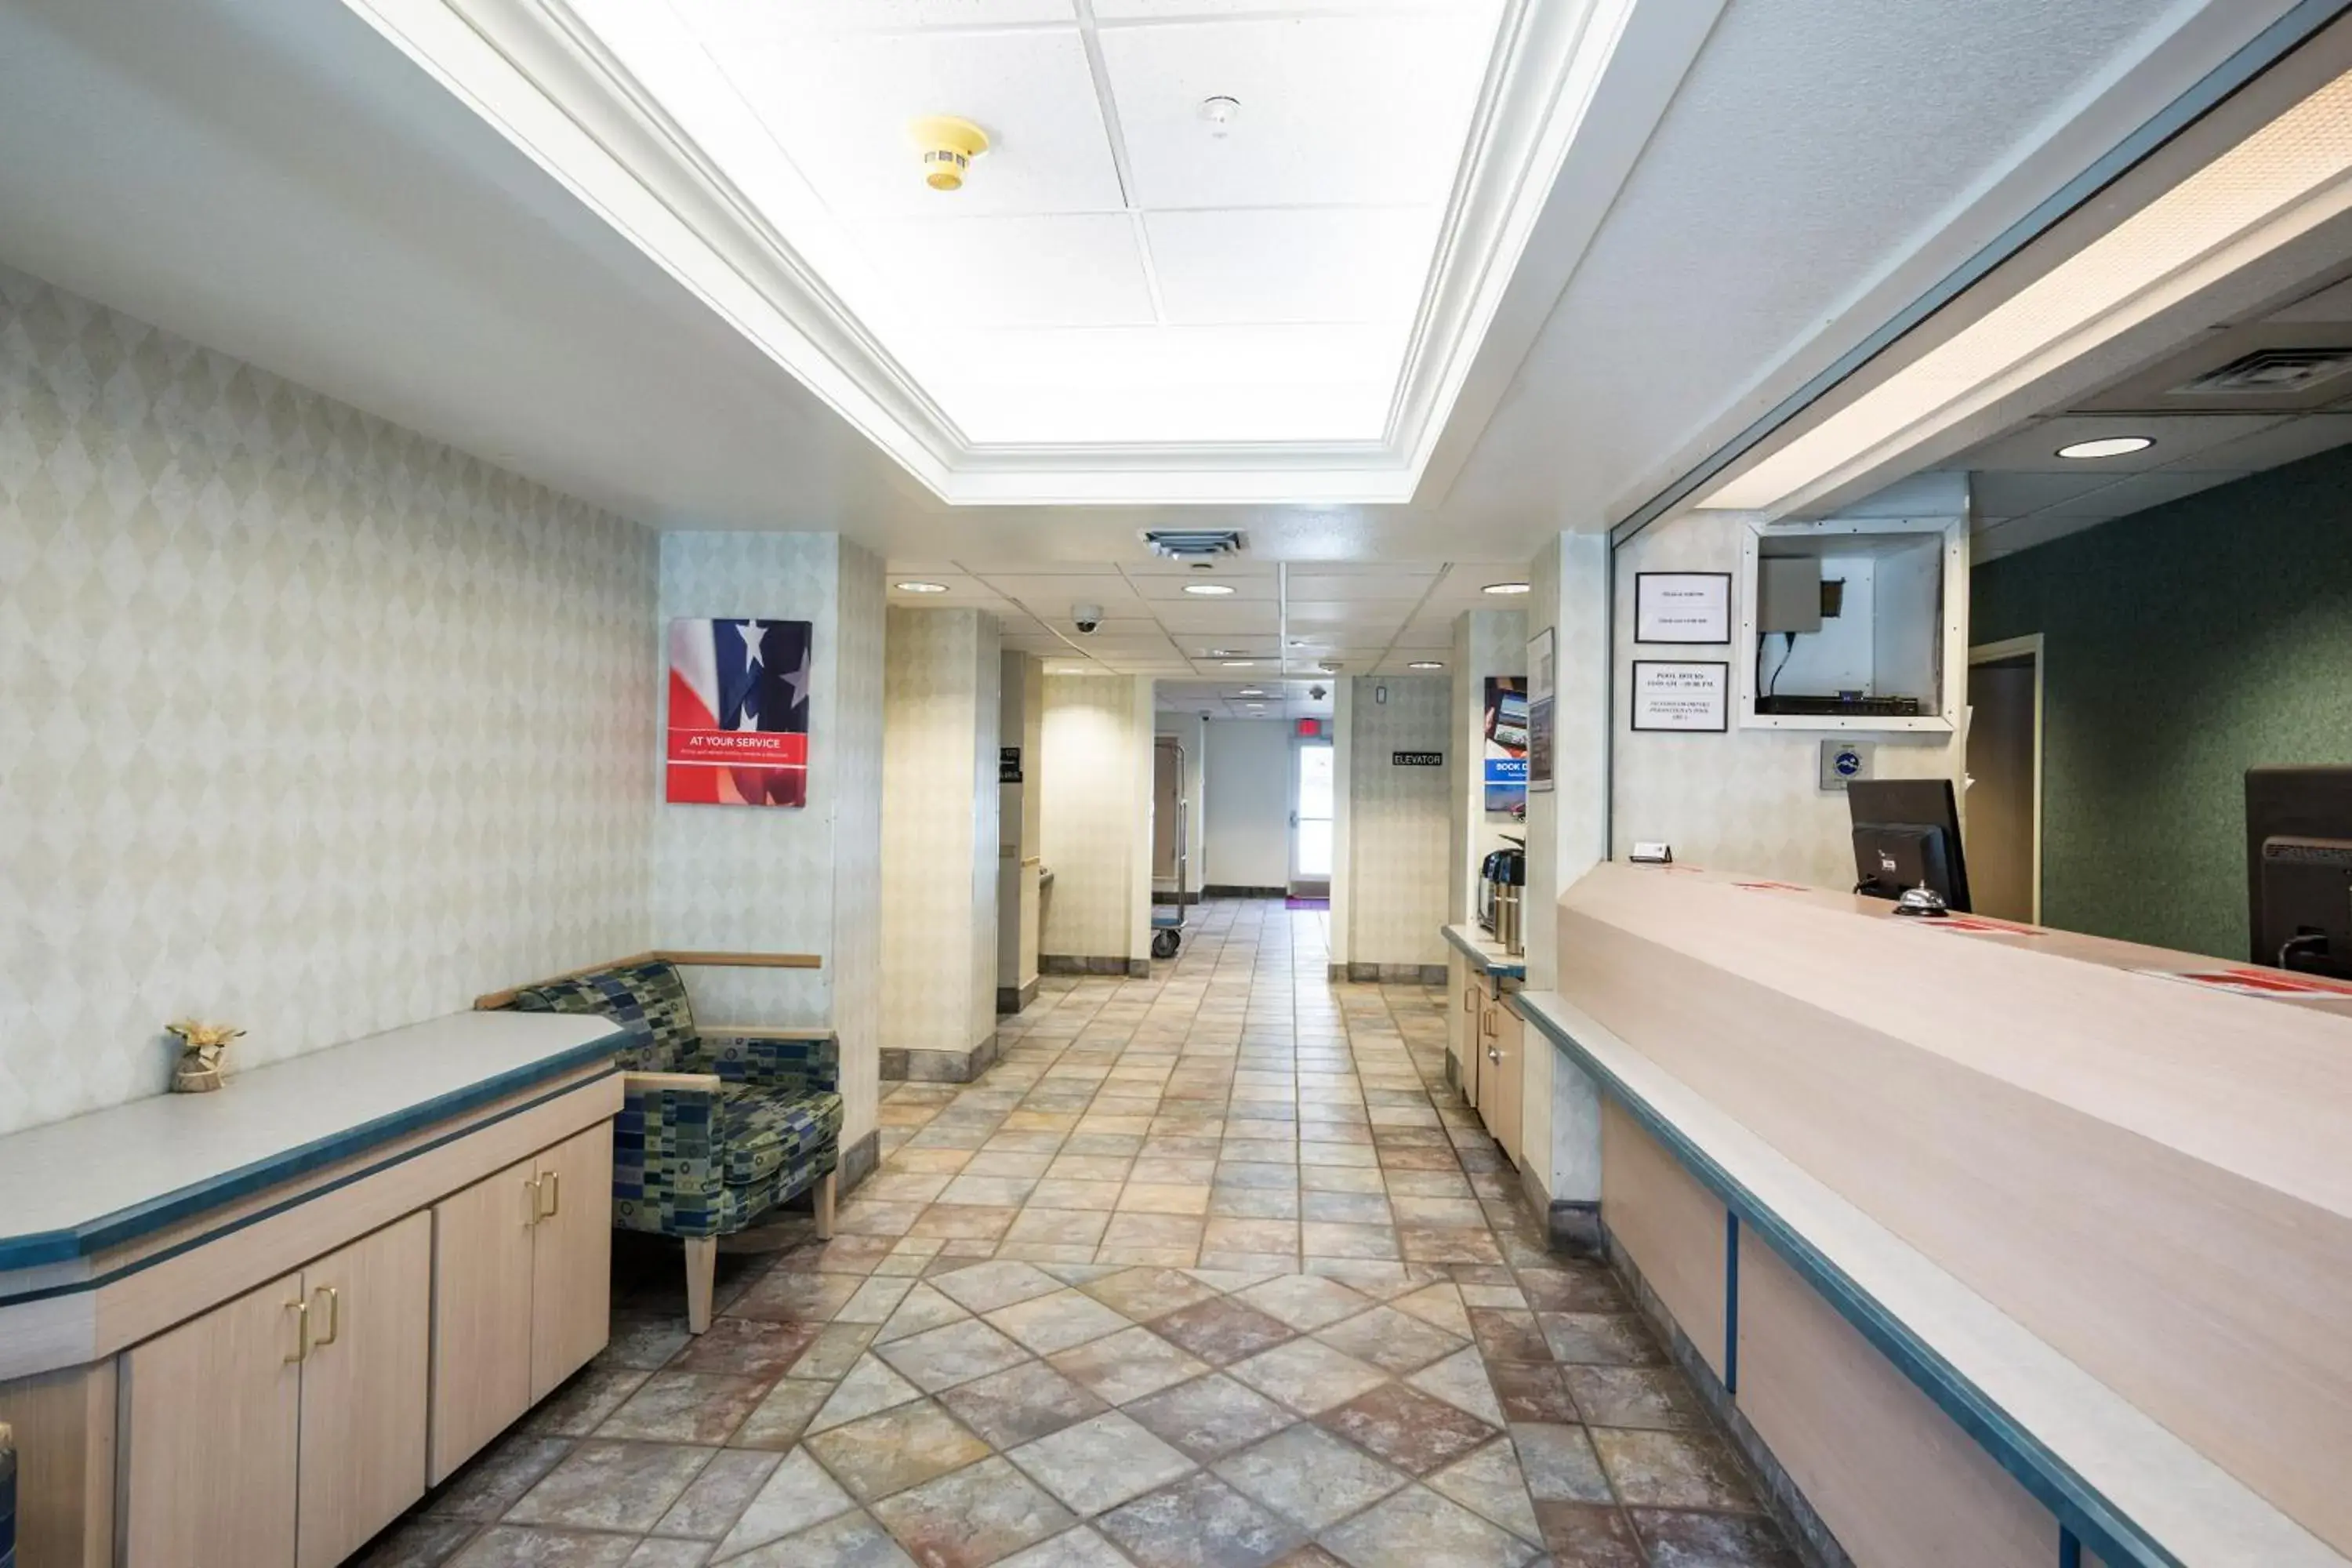 Lobby or reception, Lobby/Reception in Motel 6-Ruidoso, NM